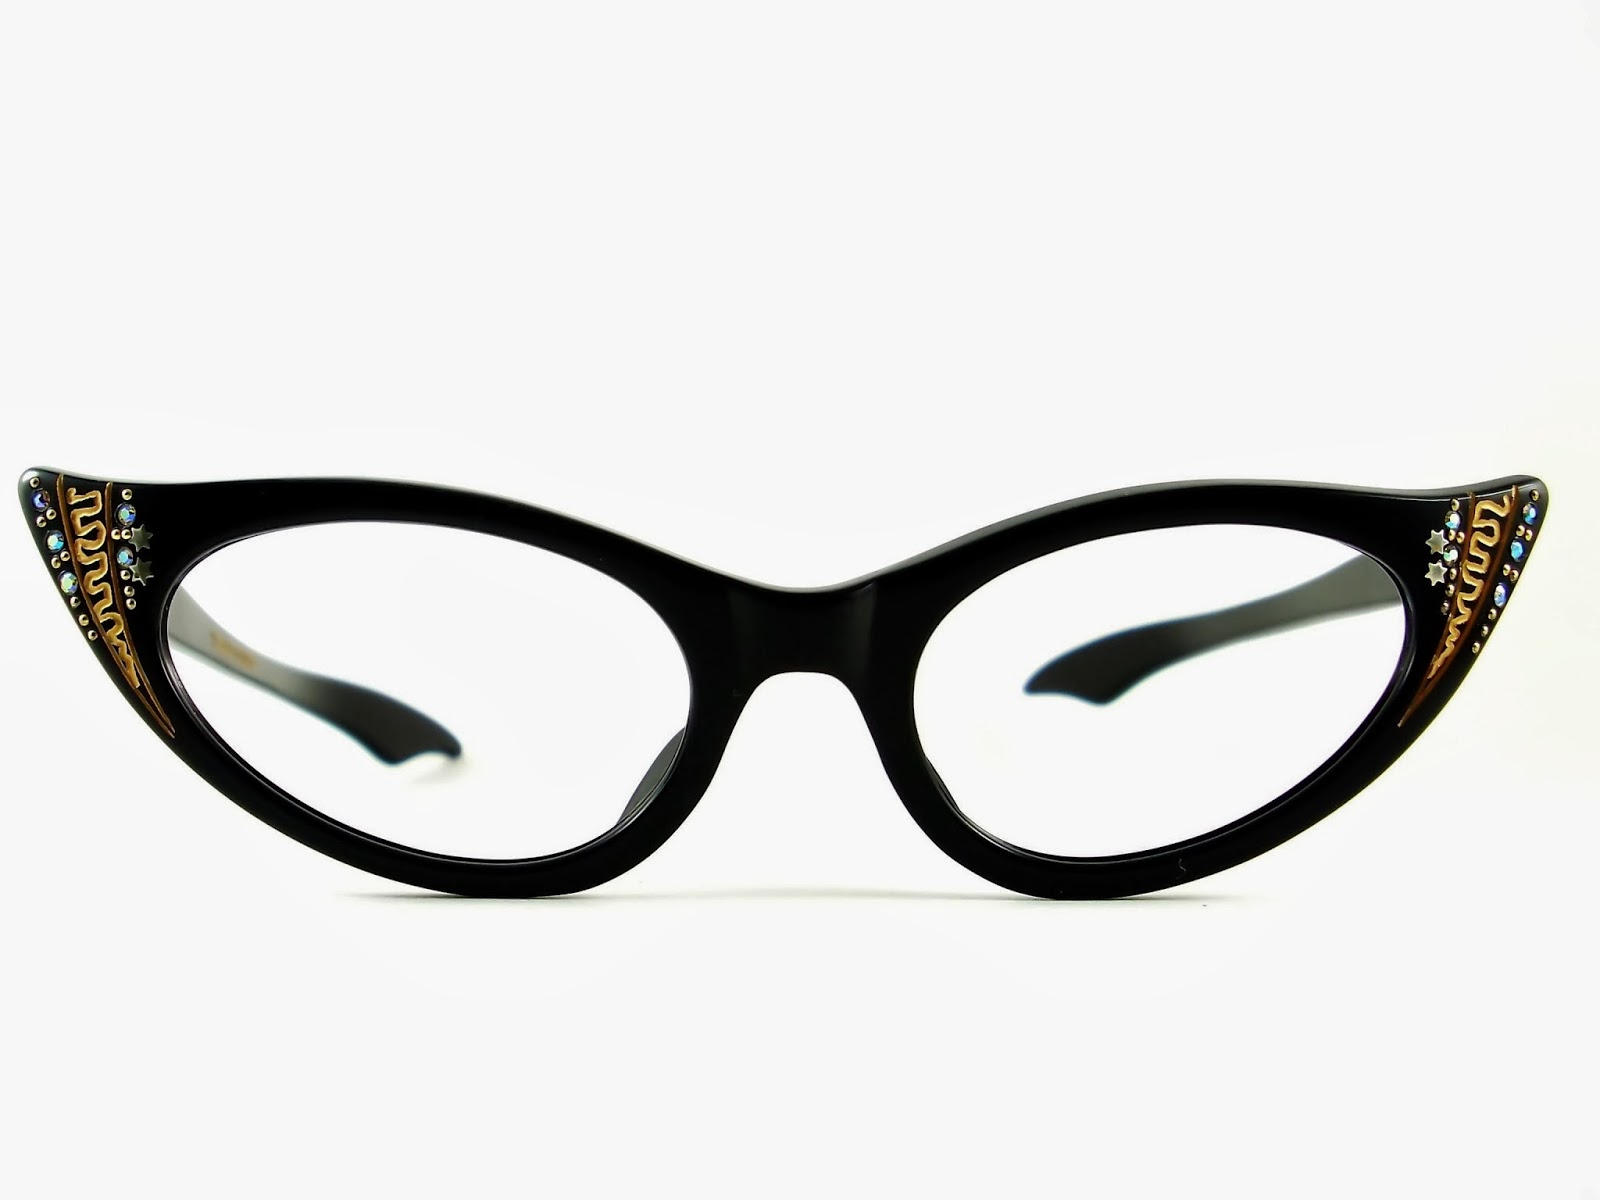 Vintage Eyeglasses Frames Eyewear Sunglasses 50S: January 2014